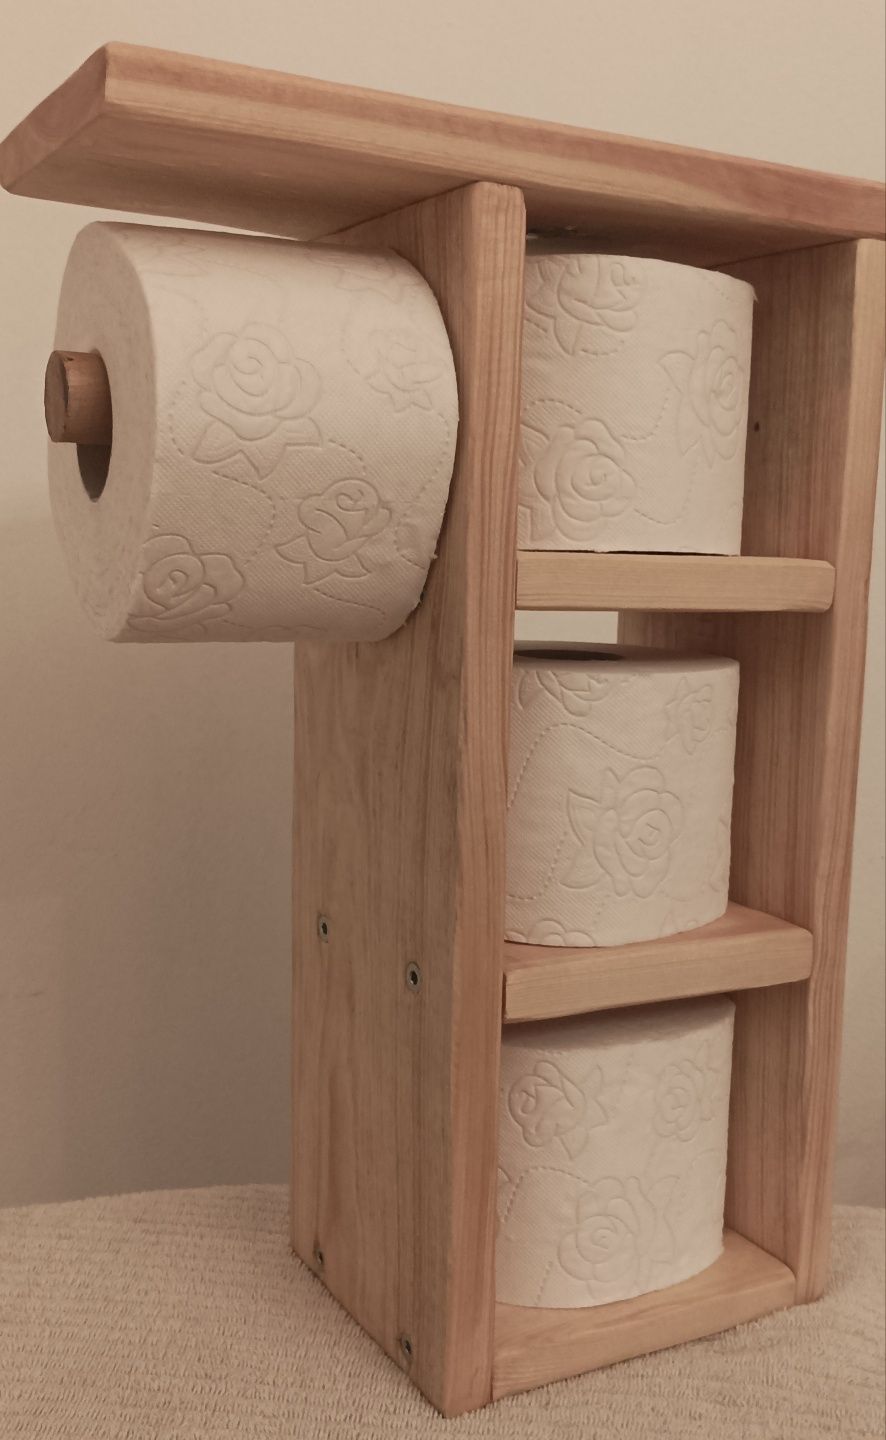 Stojak, półka na papier toaletowy